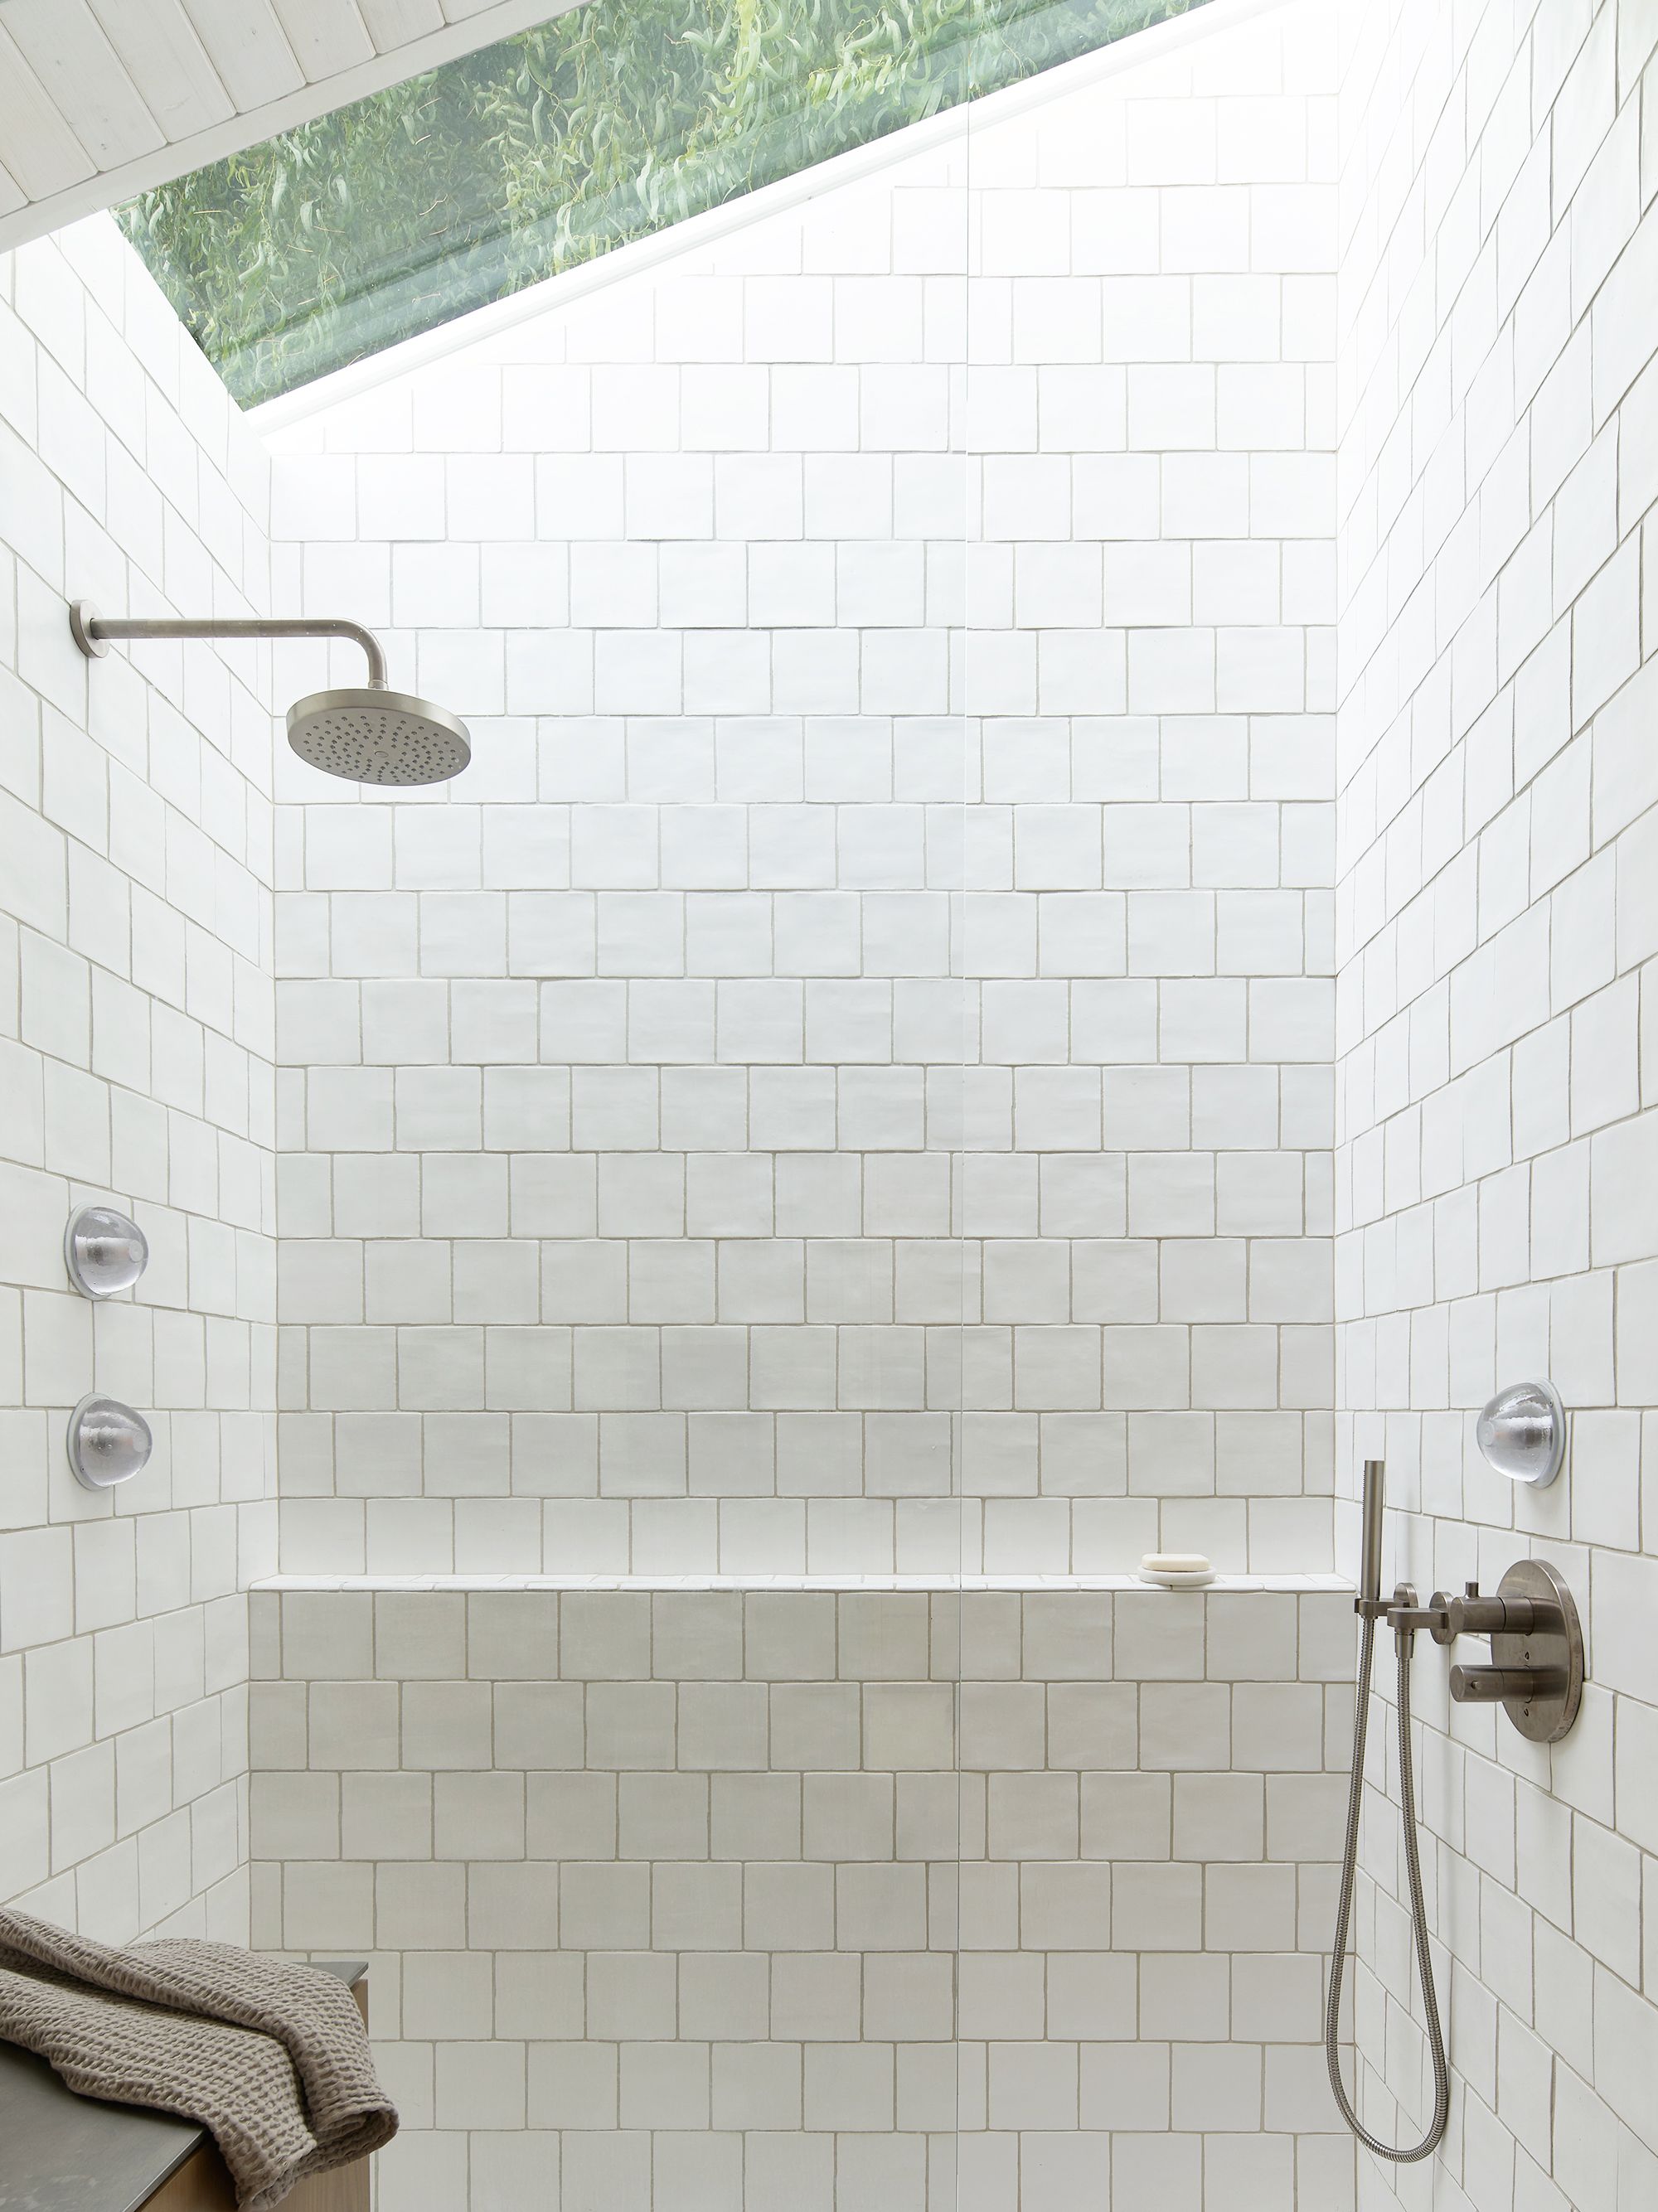 55 Bathroom Tile Ideas Bath, Tiled Showers Photos